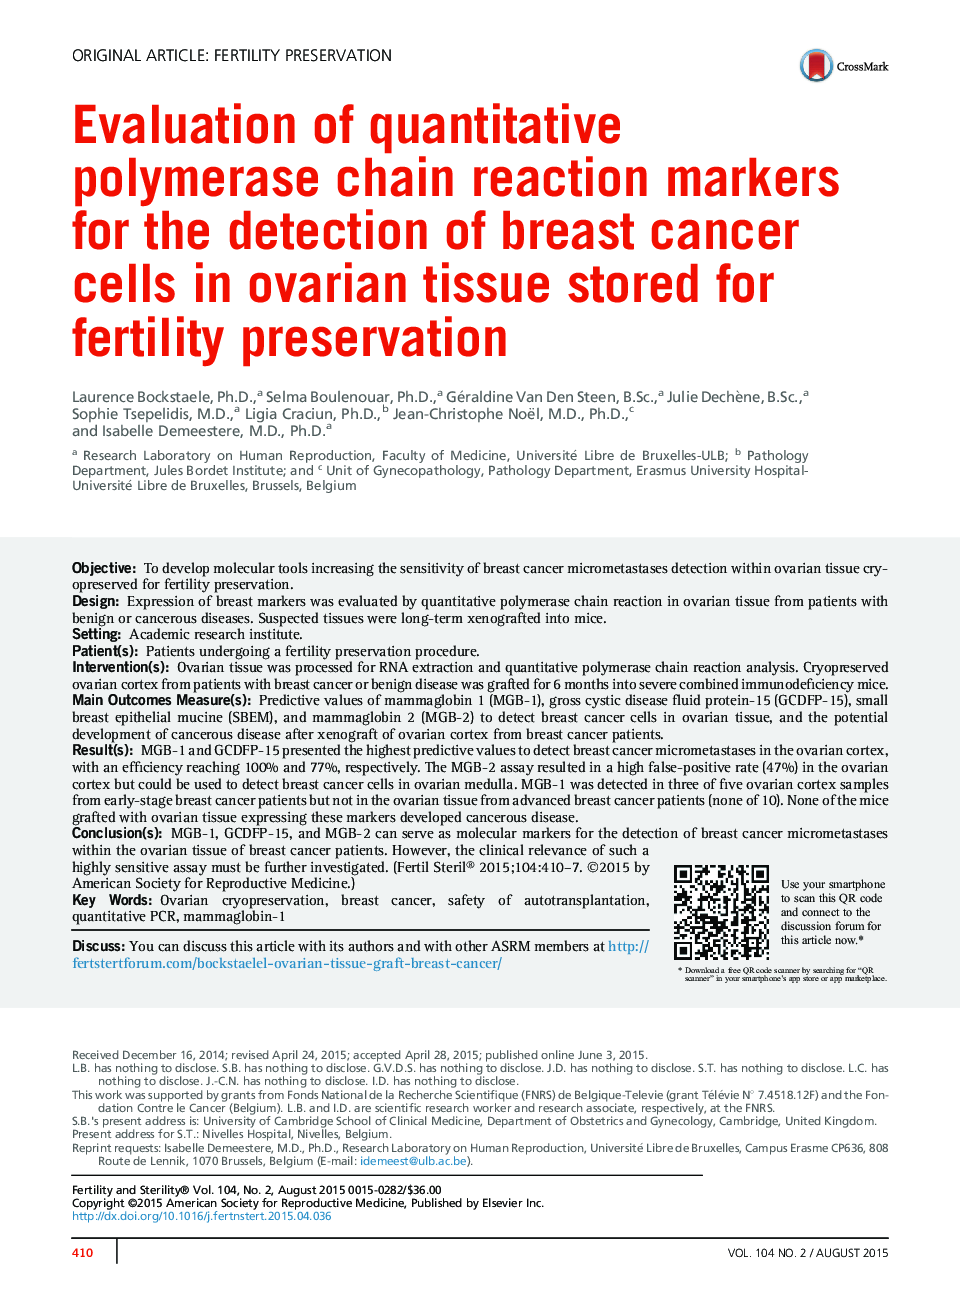 ارزیابی نشانگرهای واکنش زنجیره ای پلیمراز کمی برای تشخیص سلول های سرطانی پستان در بافت تخمدانی که برای حفظ باروری ذخیره می شود 